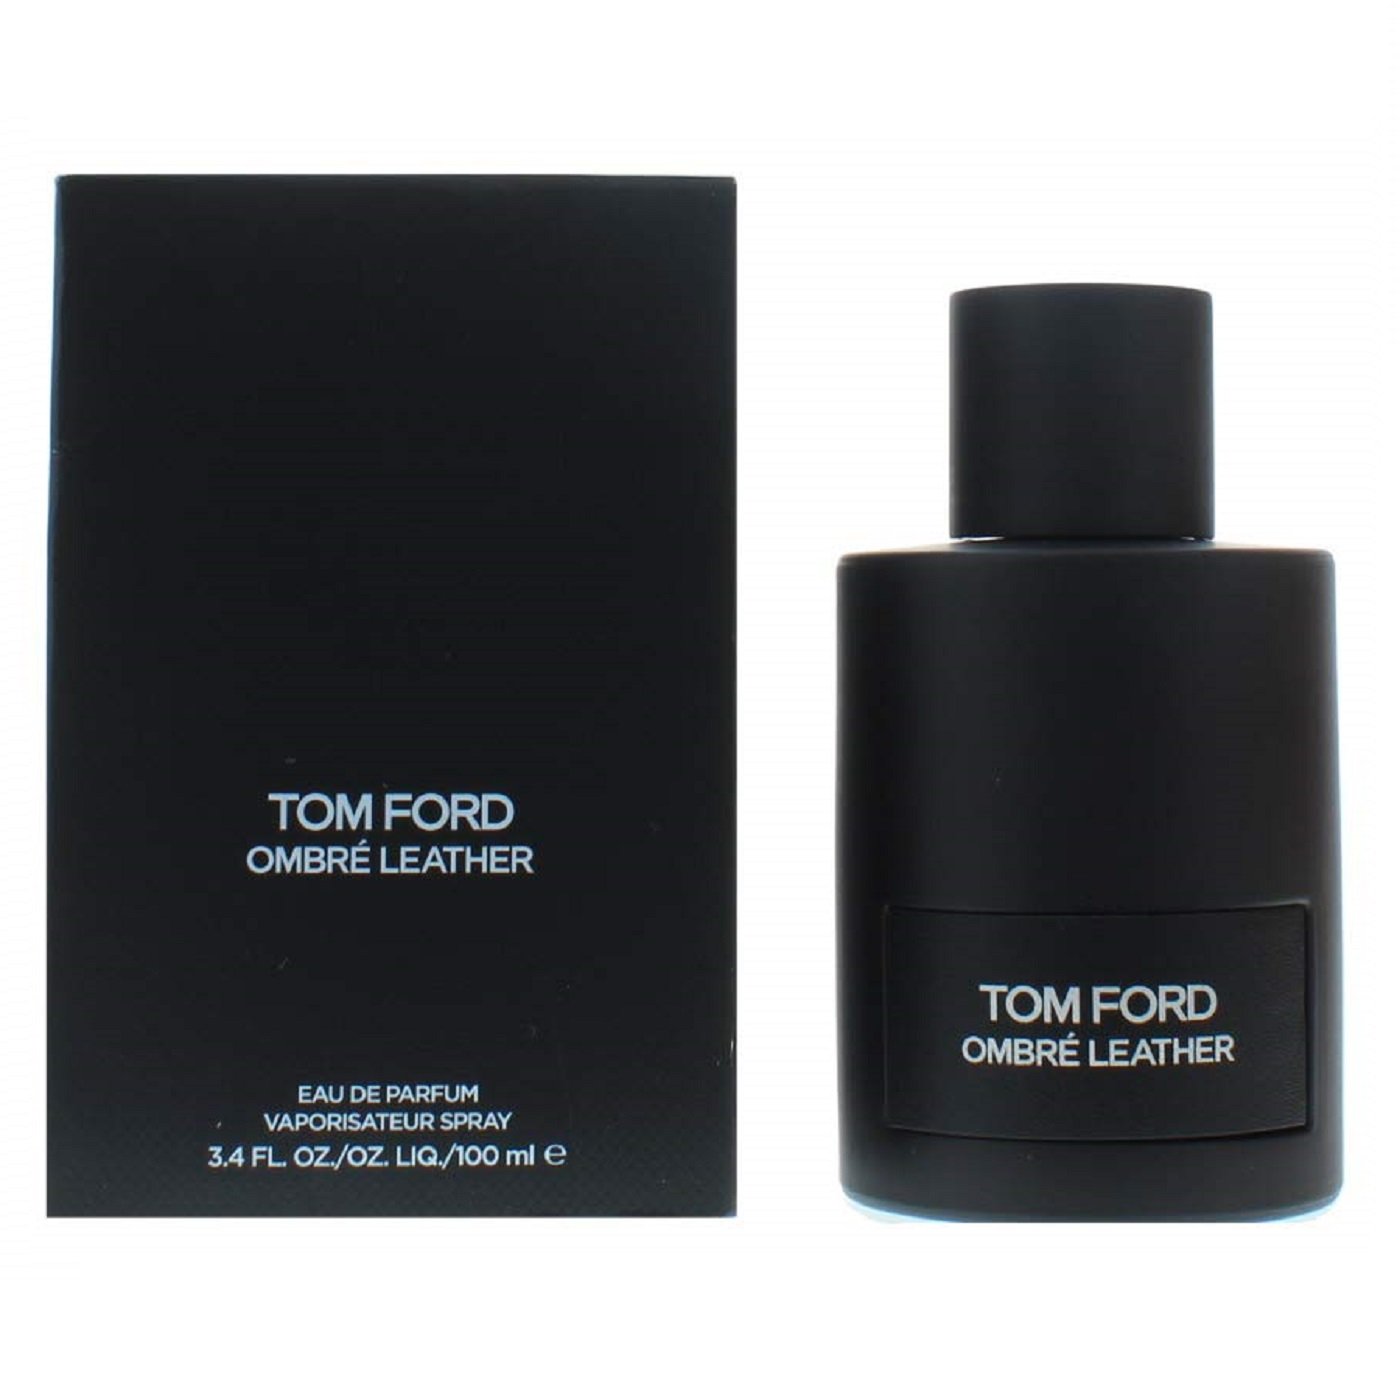 Tom Ford Ombre Leather Eau de Parfum - Eshtir.com